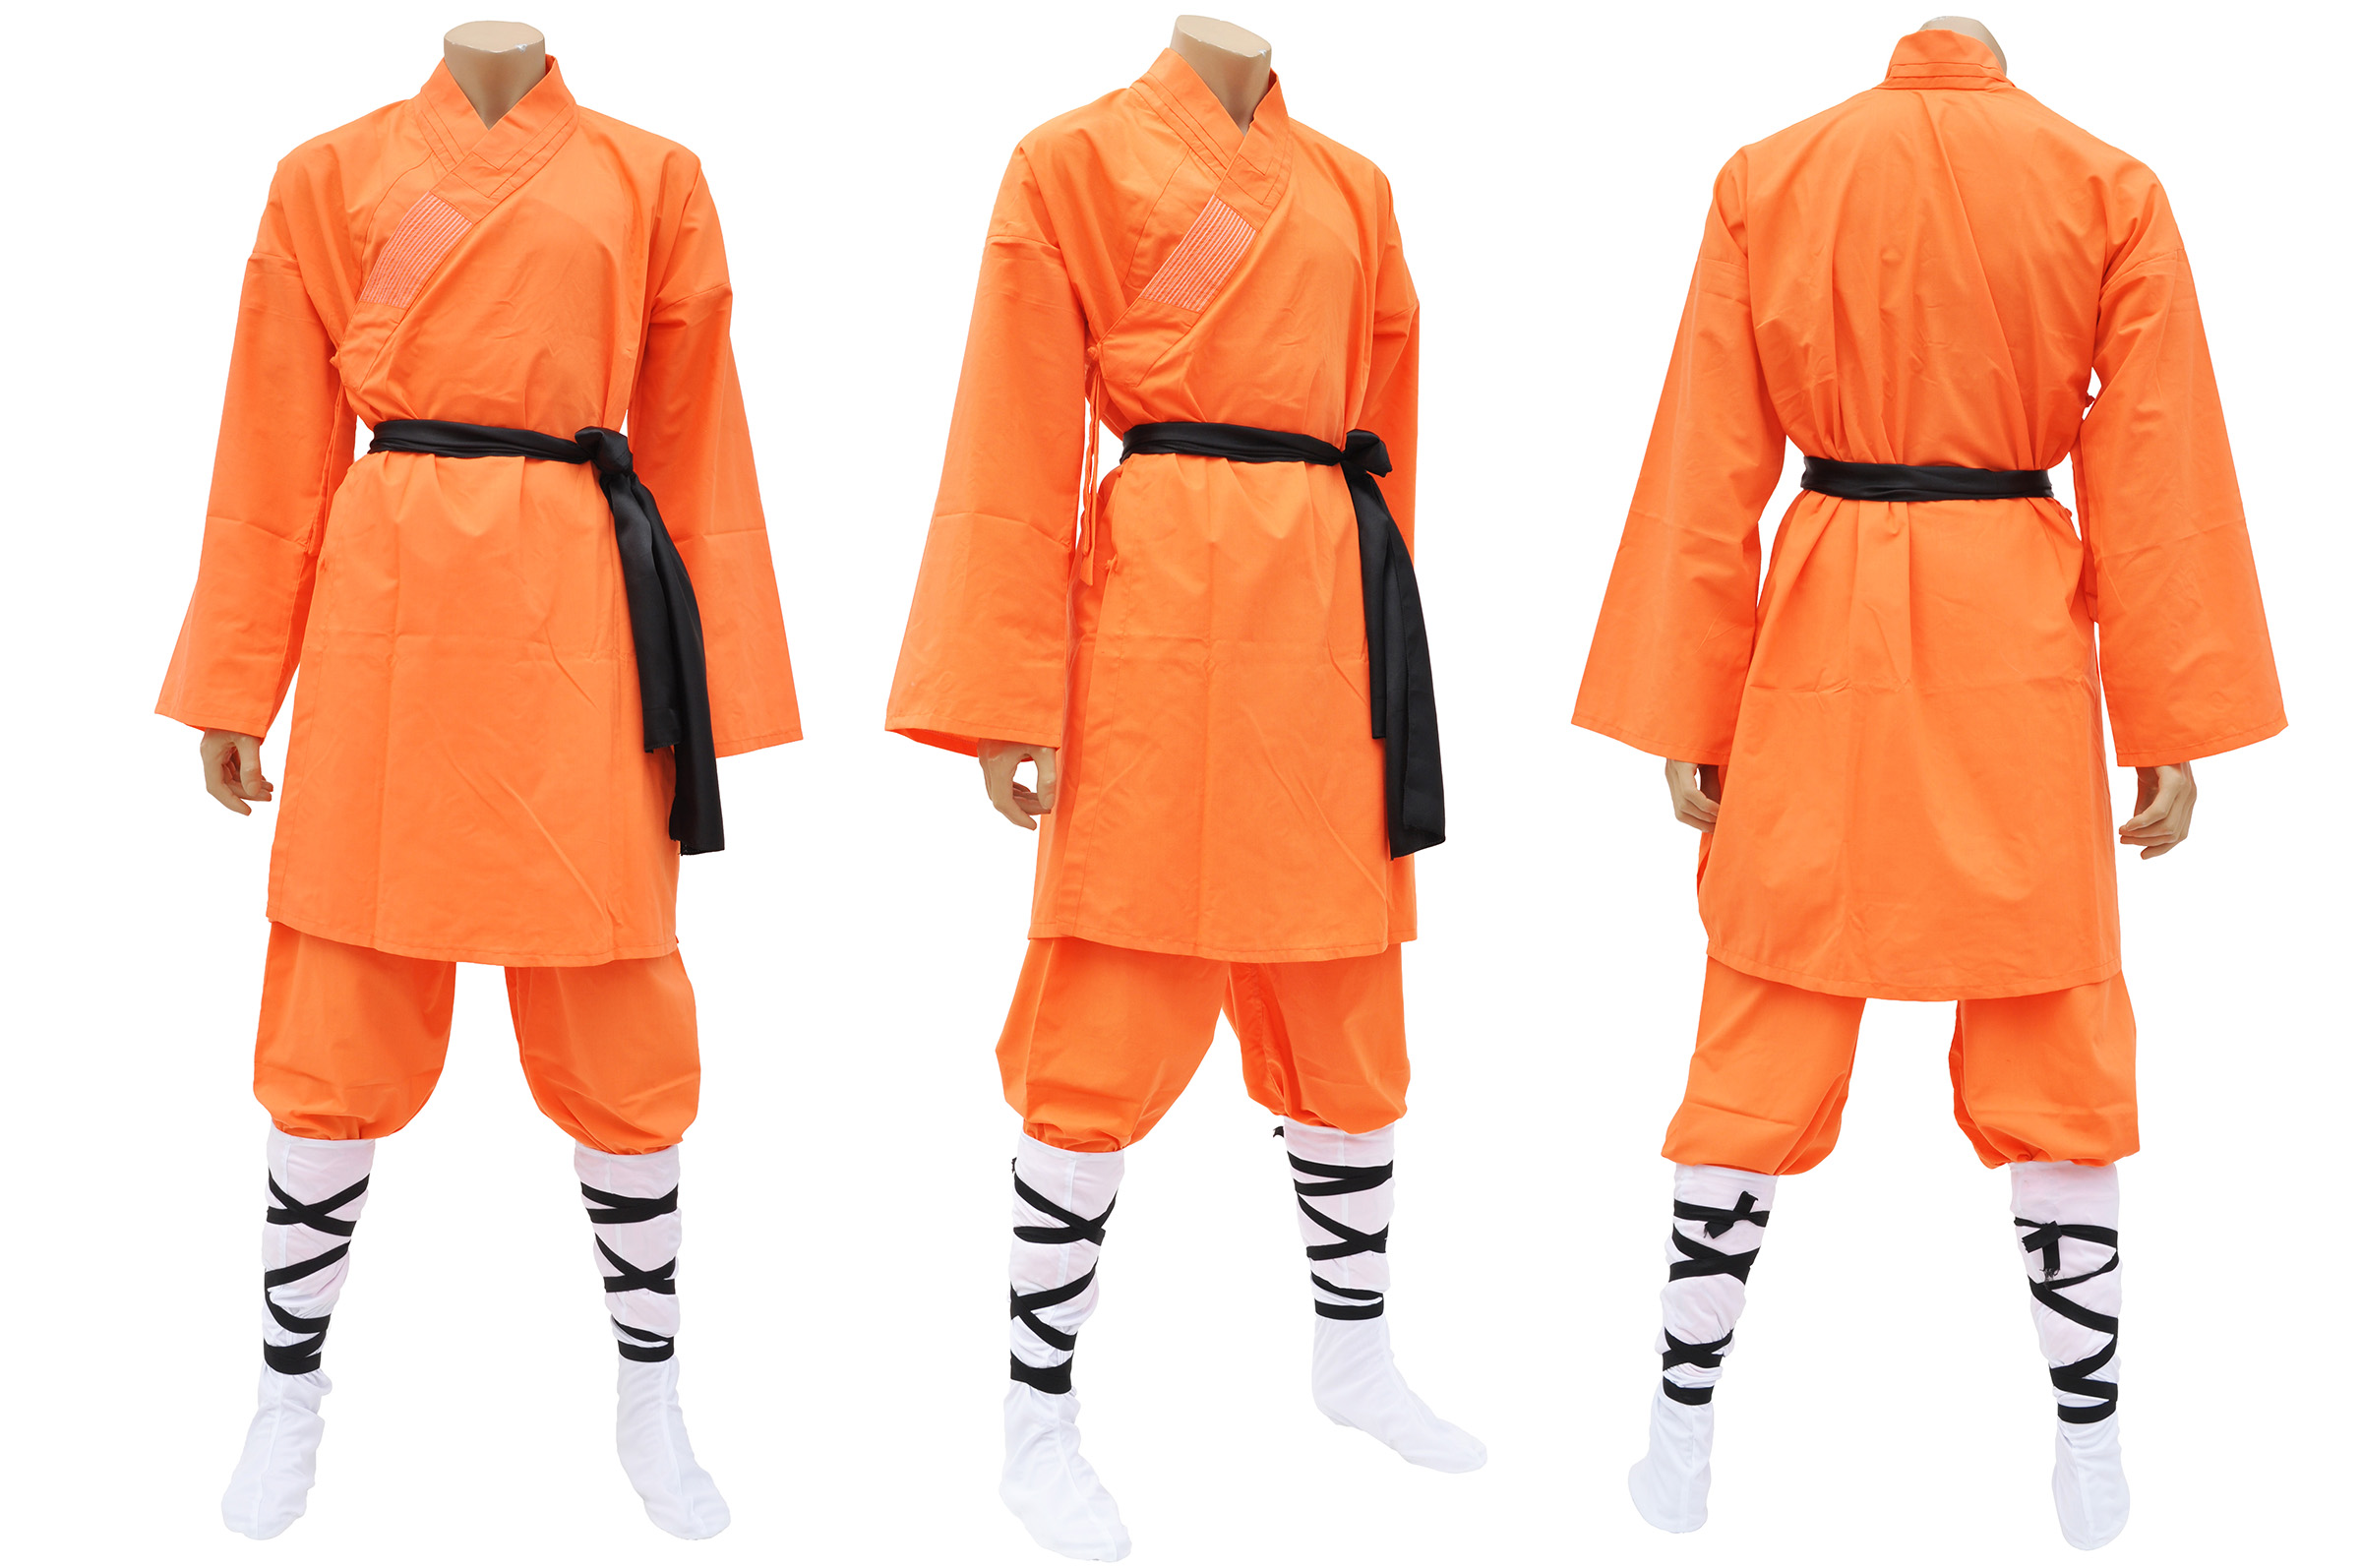 Shaolin suit photo